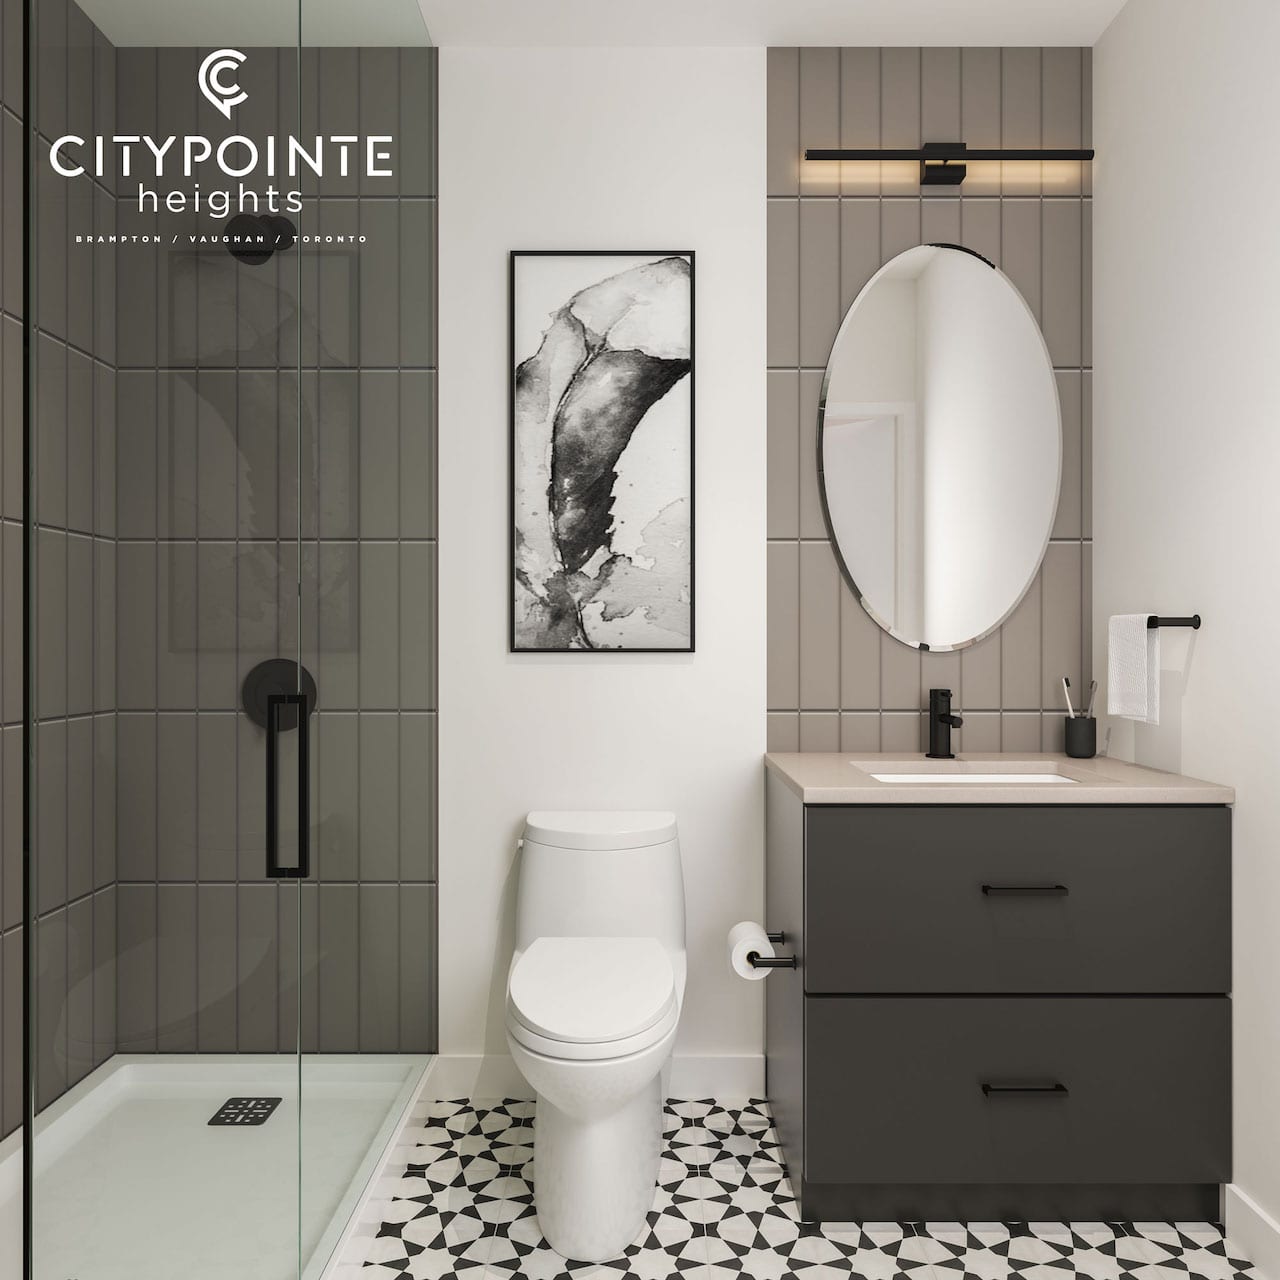 Rendering of CityPointe Heights interior suite bathroom